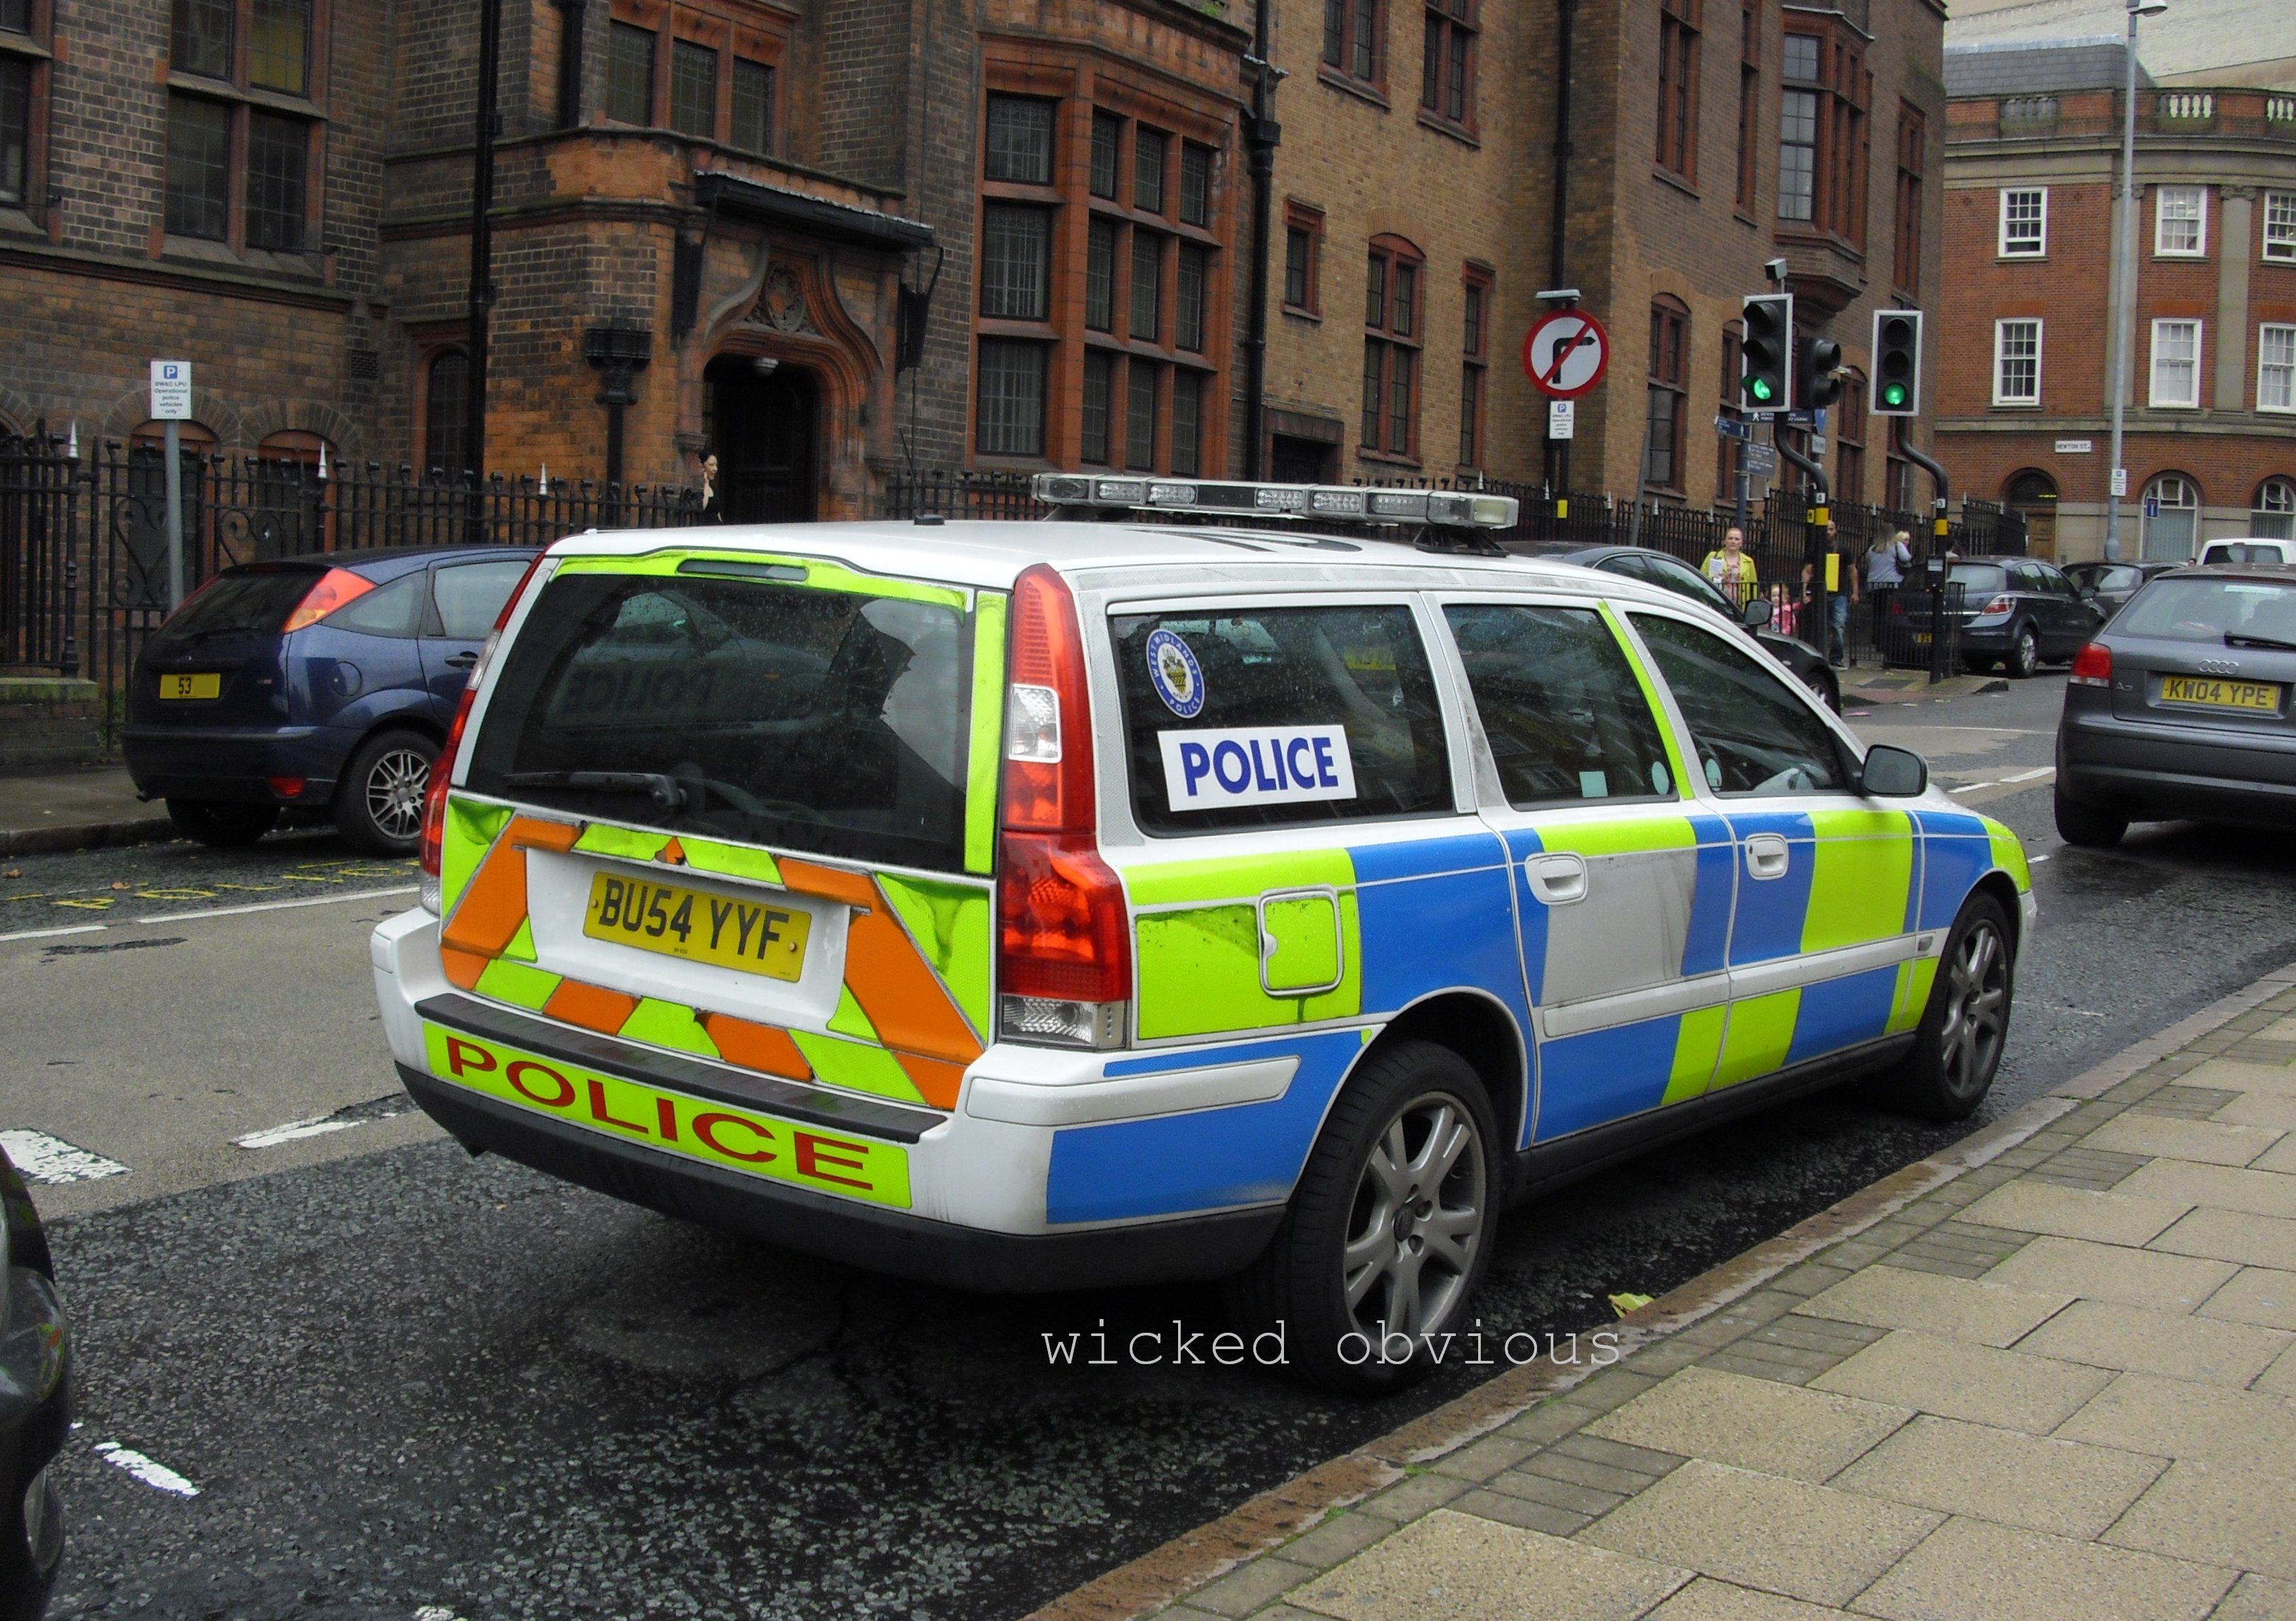 Police des Midlands de l'Ouest Volvo V70 BU54 YYF / Flickr - Partage de photos!